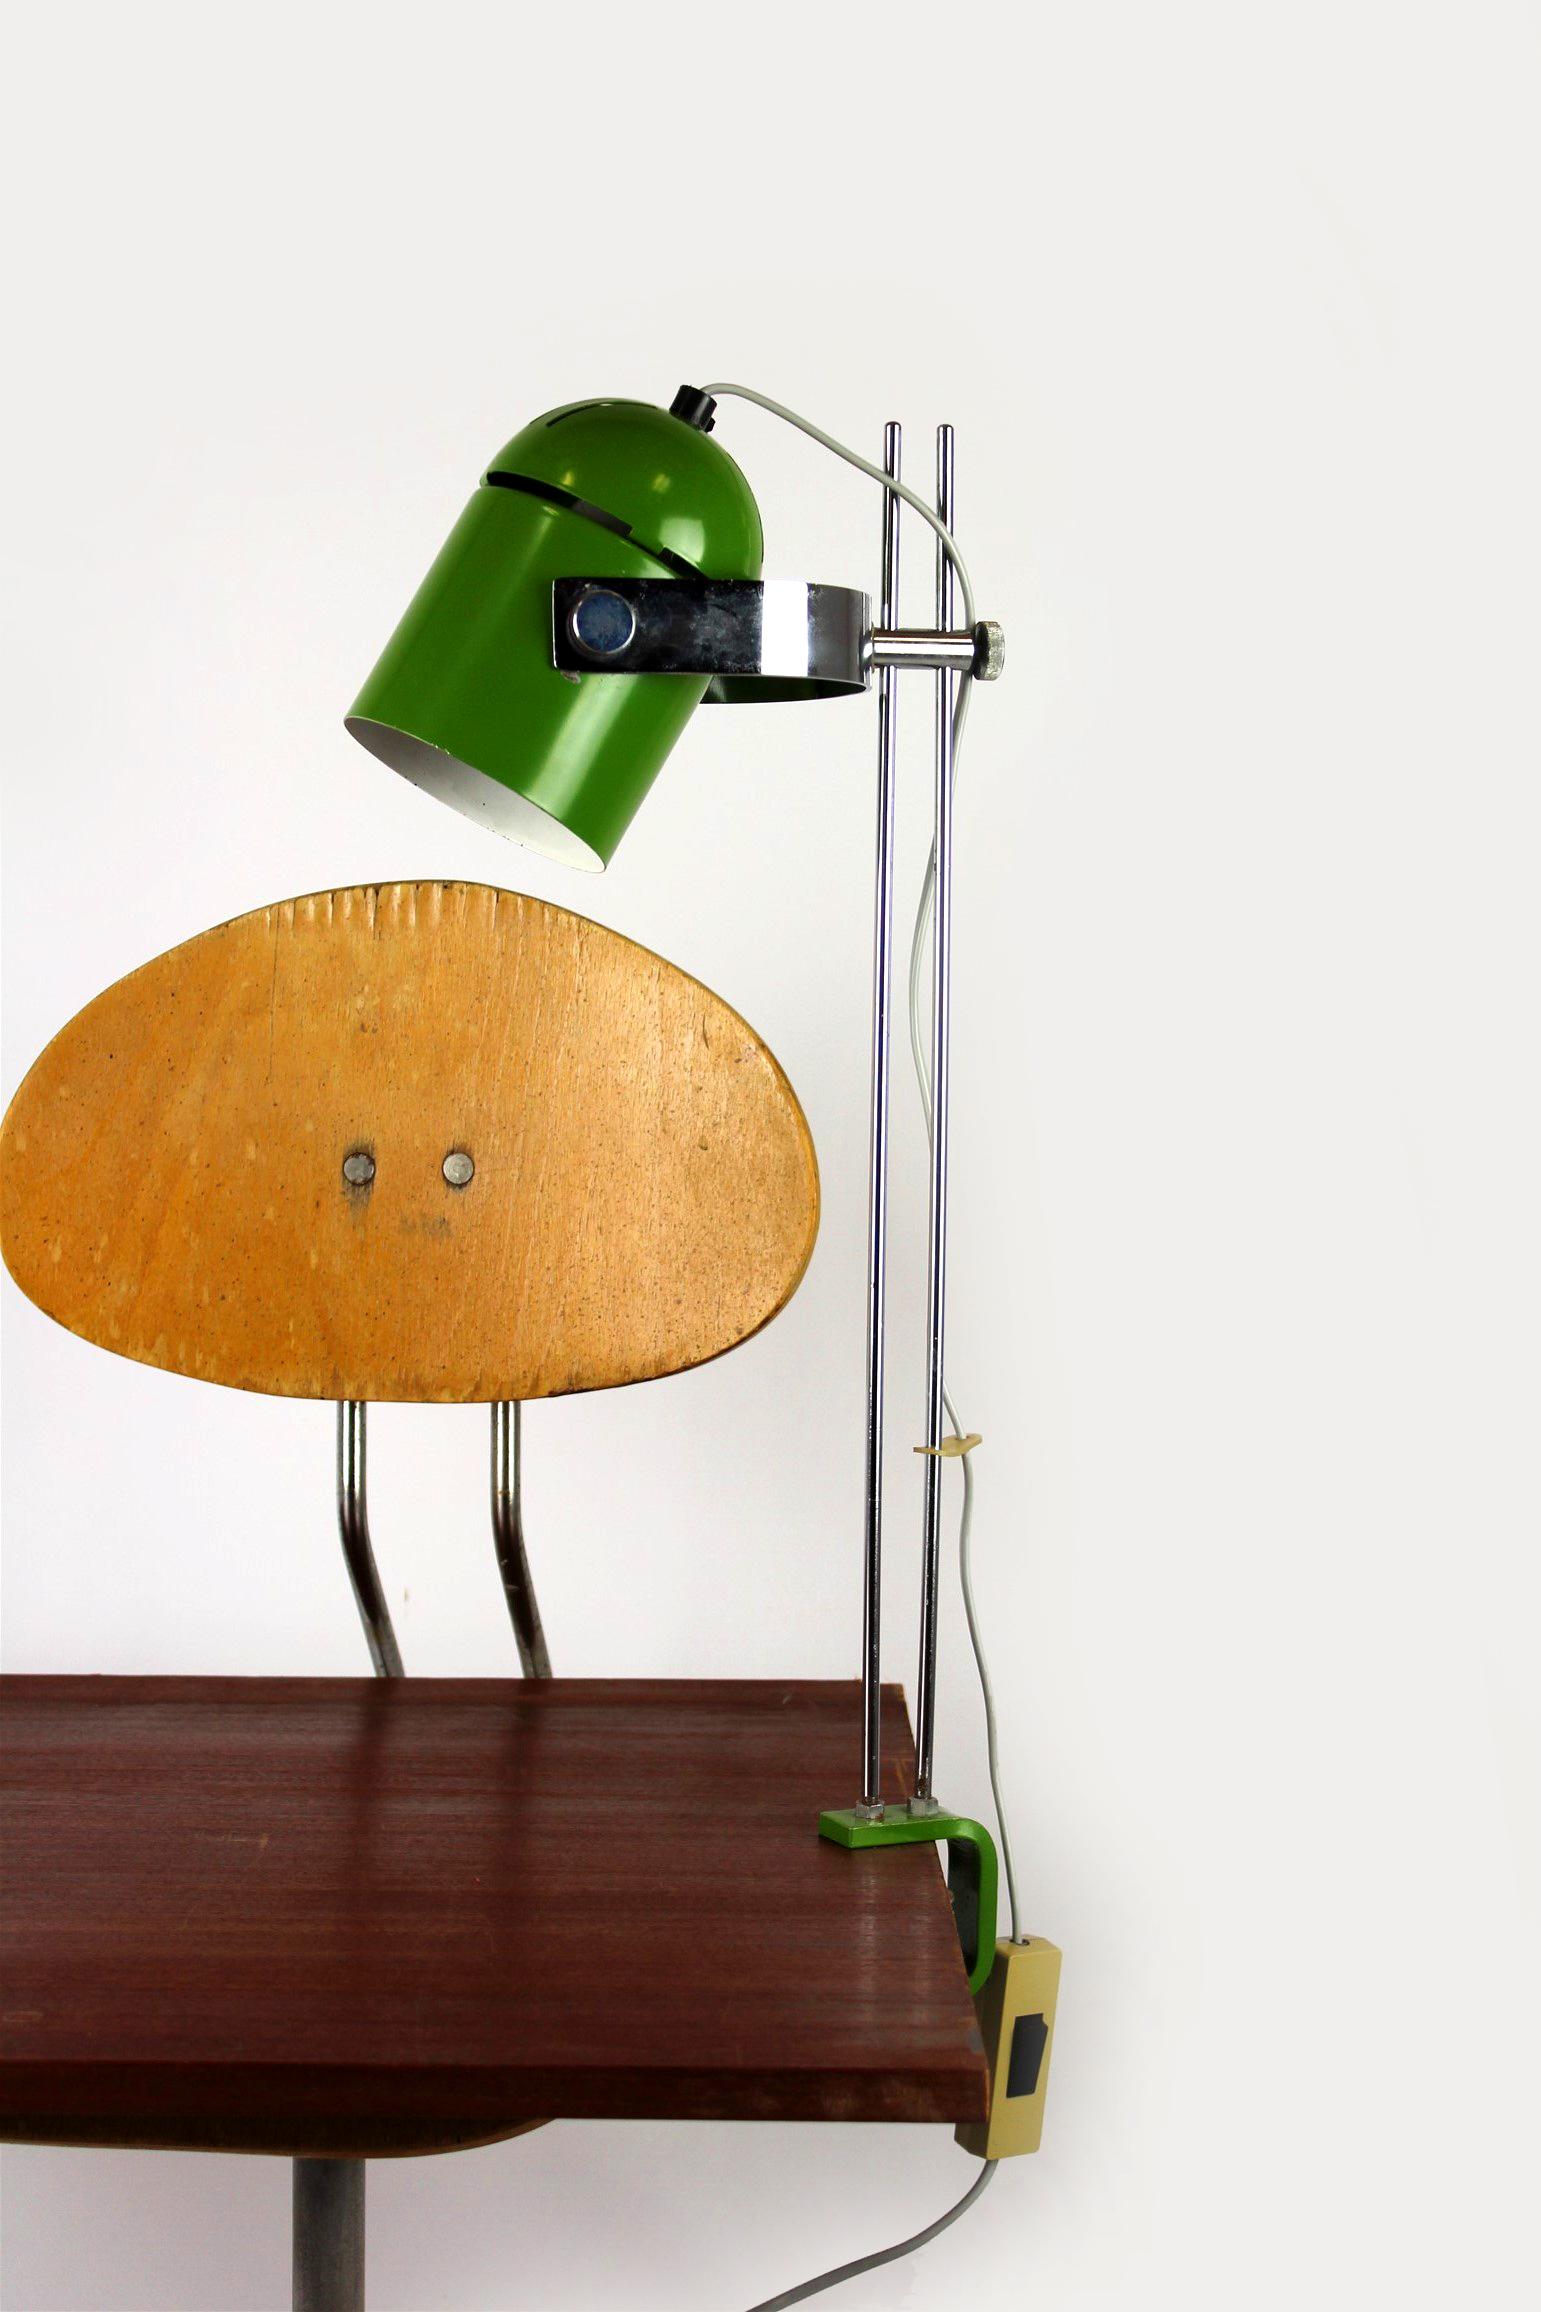 Vintage-Tischleuchte, entworfen von Stanislav Indra und hergestellt in den 1970er Jahren. Die Lampe ist voll funktionsfähig und hat einen verstellbaren Lampenschirm.